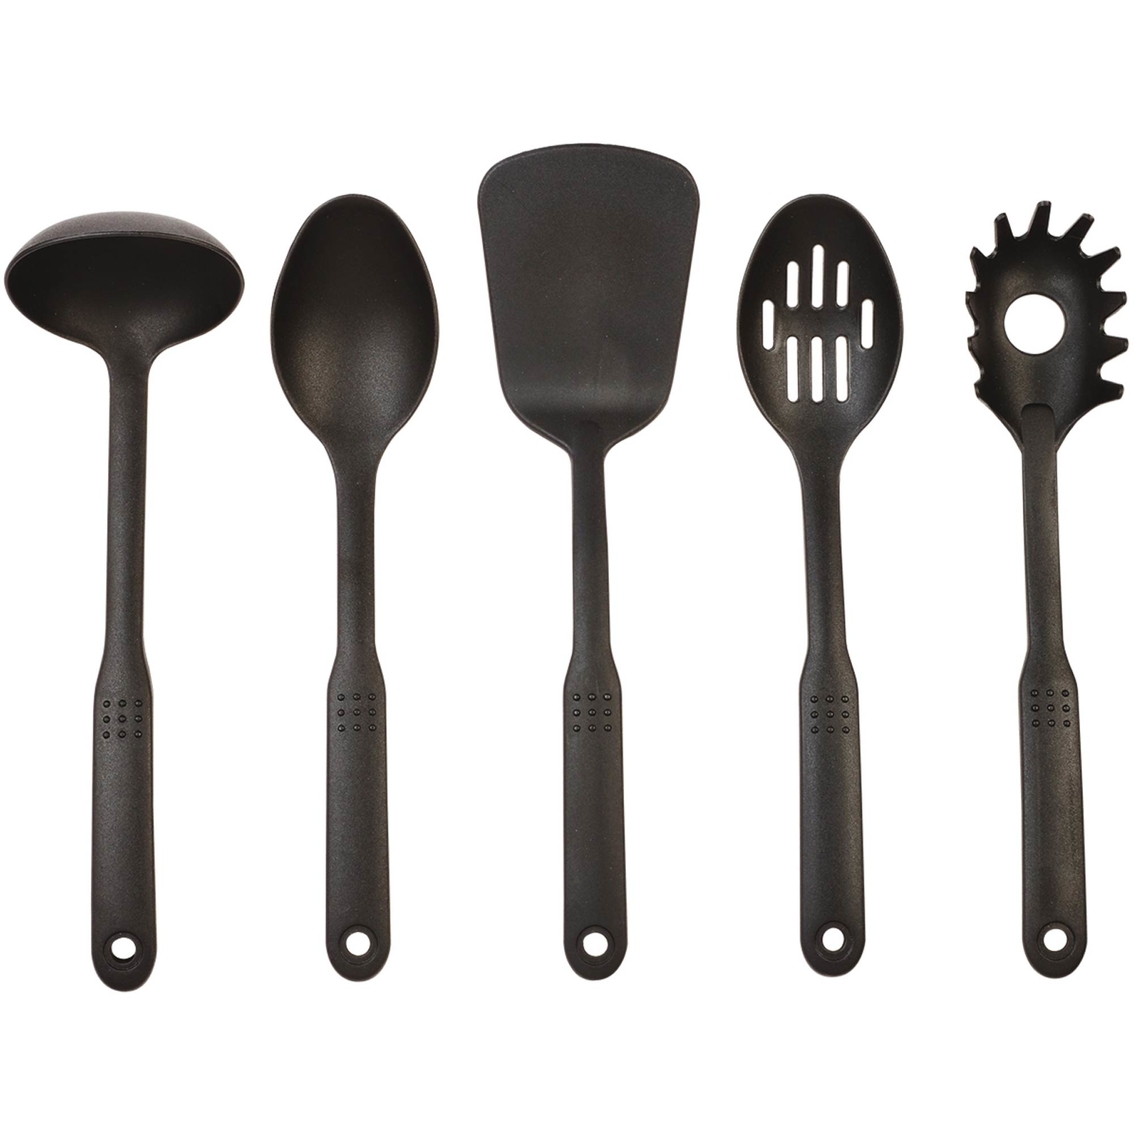 Farberware 5 Pc. Nylon Tool Set, Cooking Tools, Household